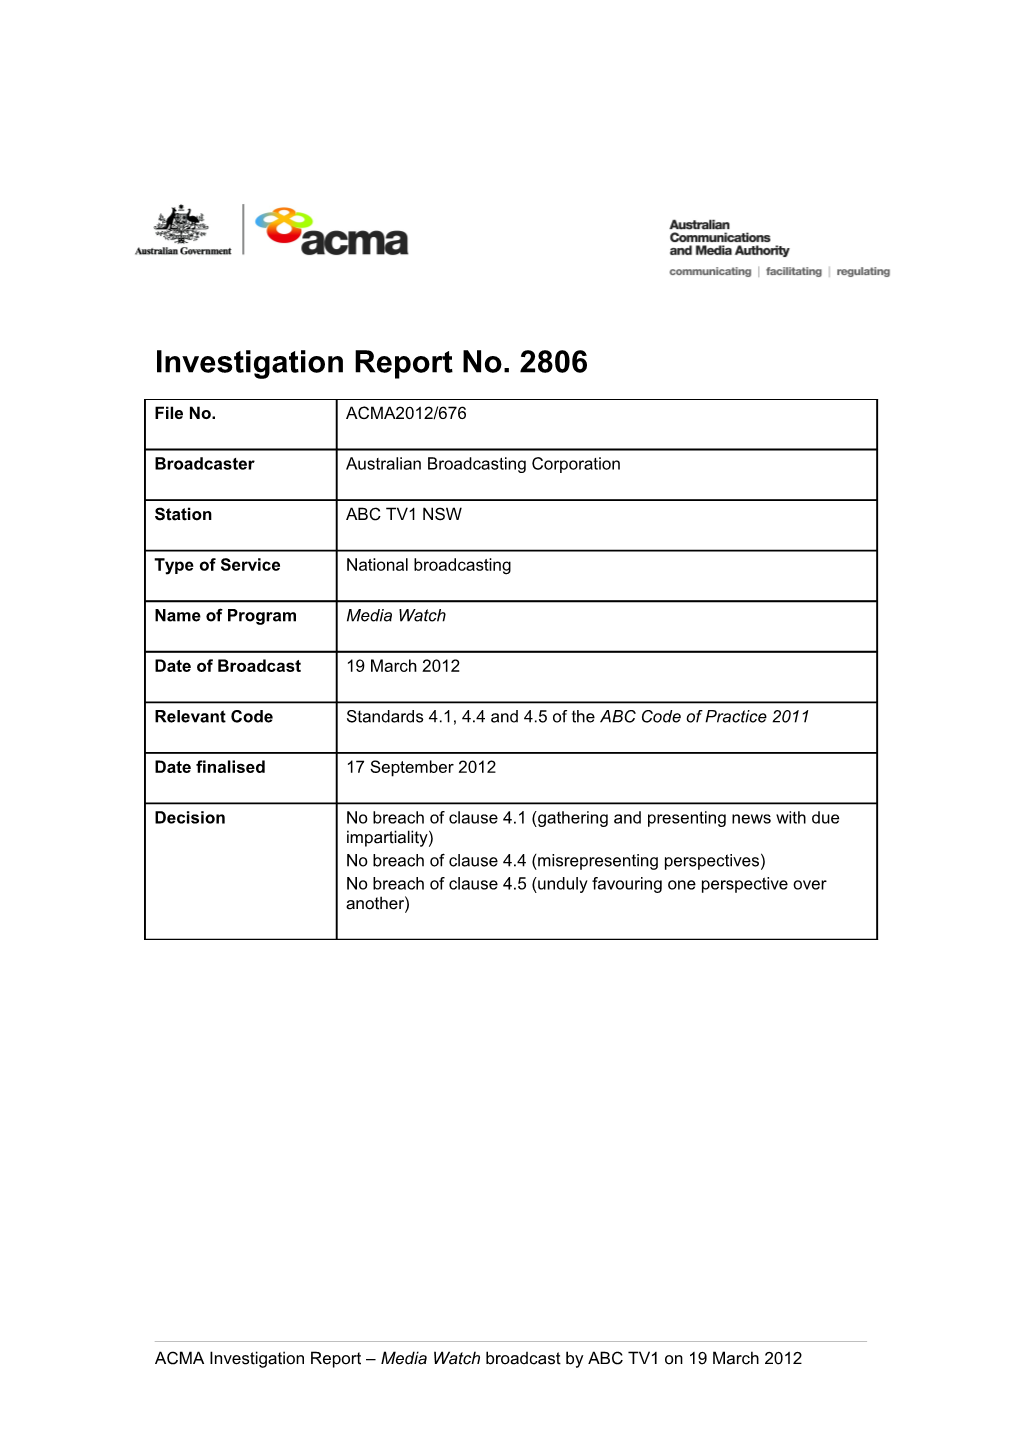 ABC TV1 - ACMA Investigation Report 2806